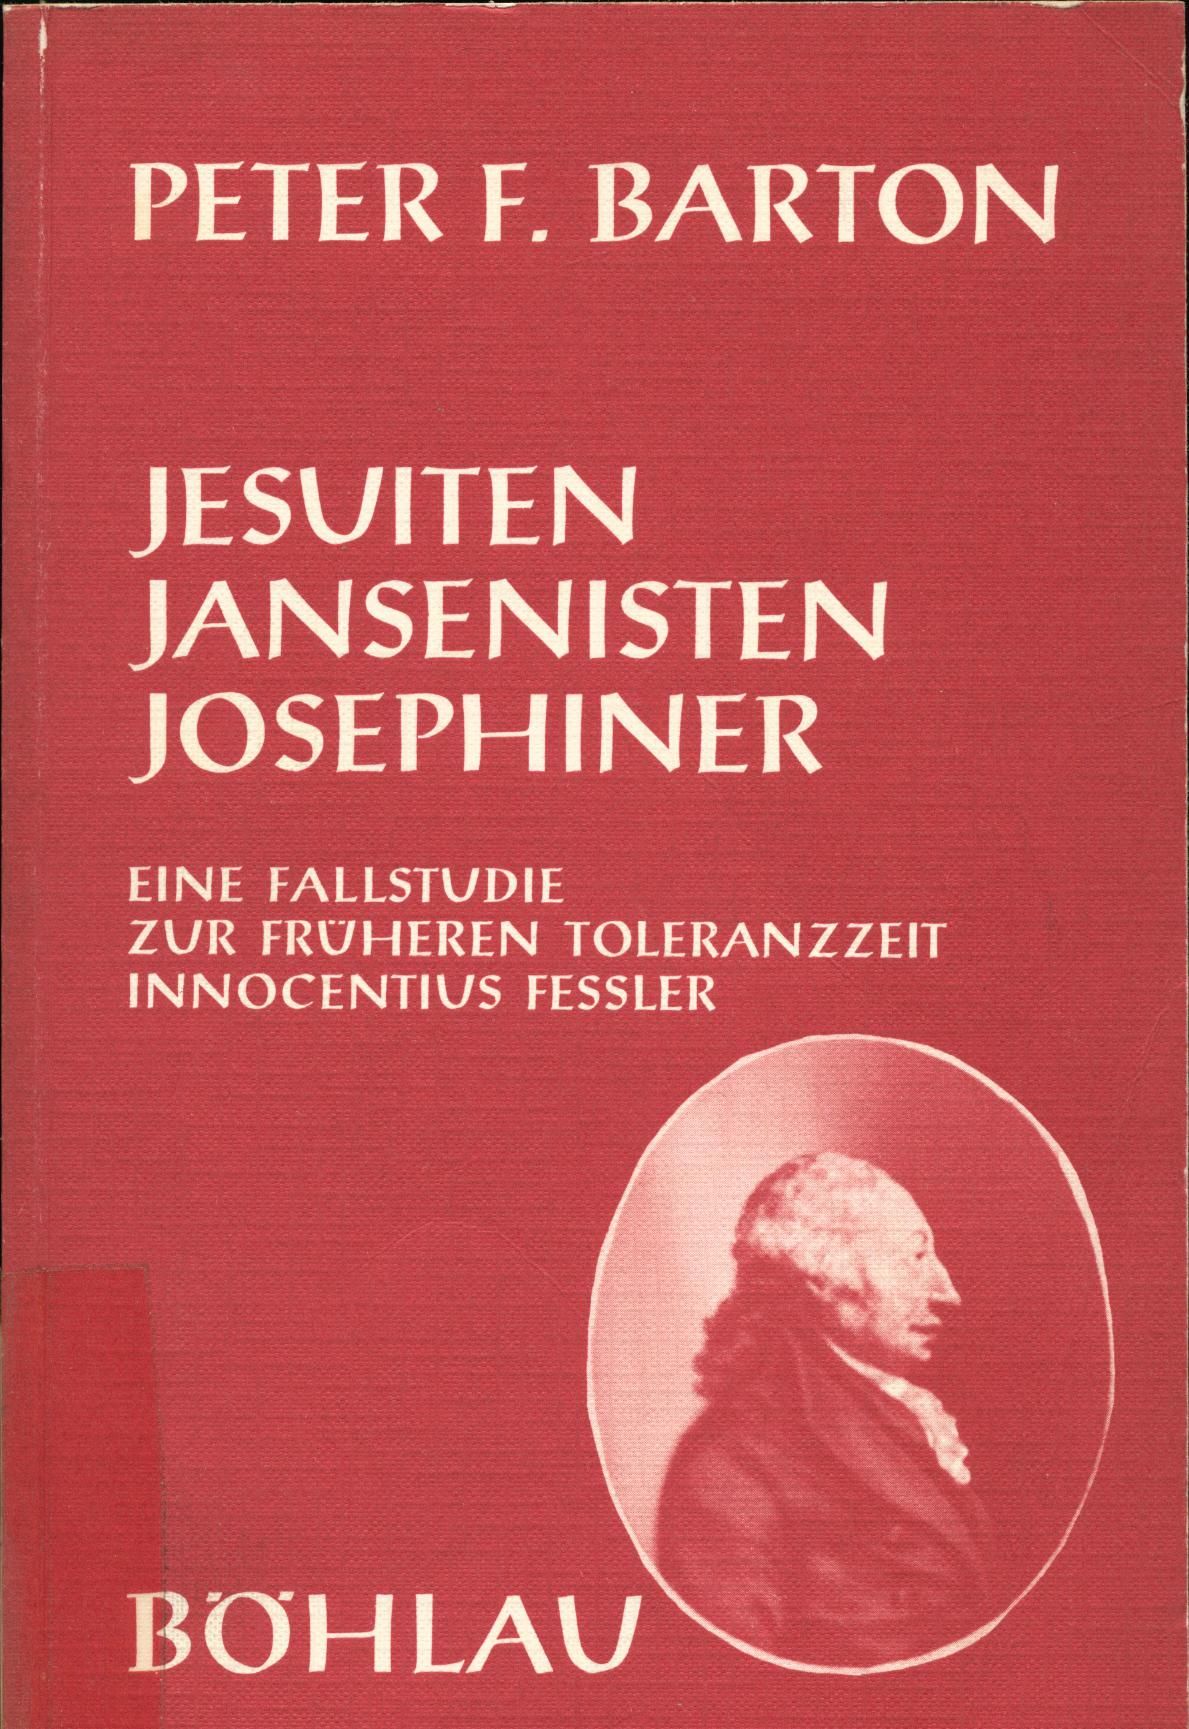 Jesuiten, Jansenisten, Josephiner Eine Fallstudie zur früheren Toleranzzeit Innocentius Fessler, 1. Teil - Barton, Peter F.